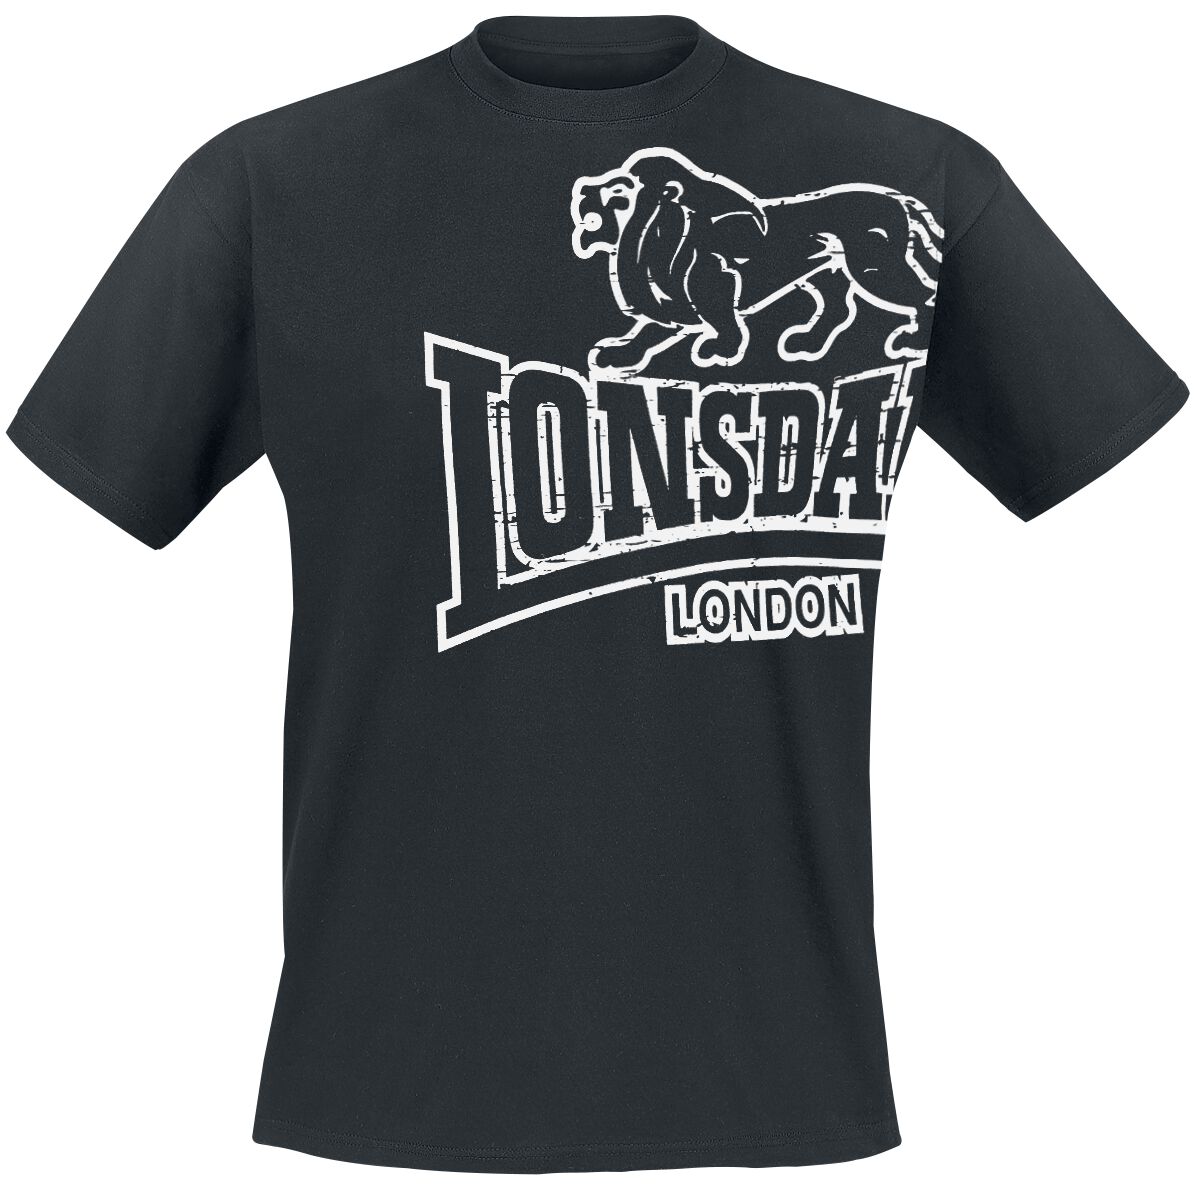 Lonsdale London Langsett T-Shirt schwarz in XXL